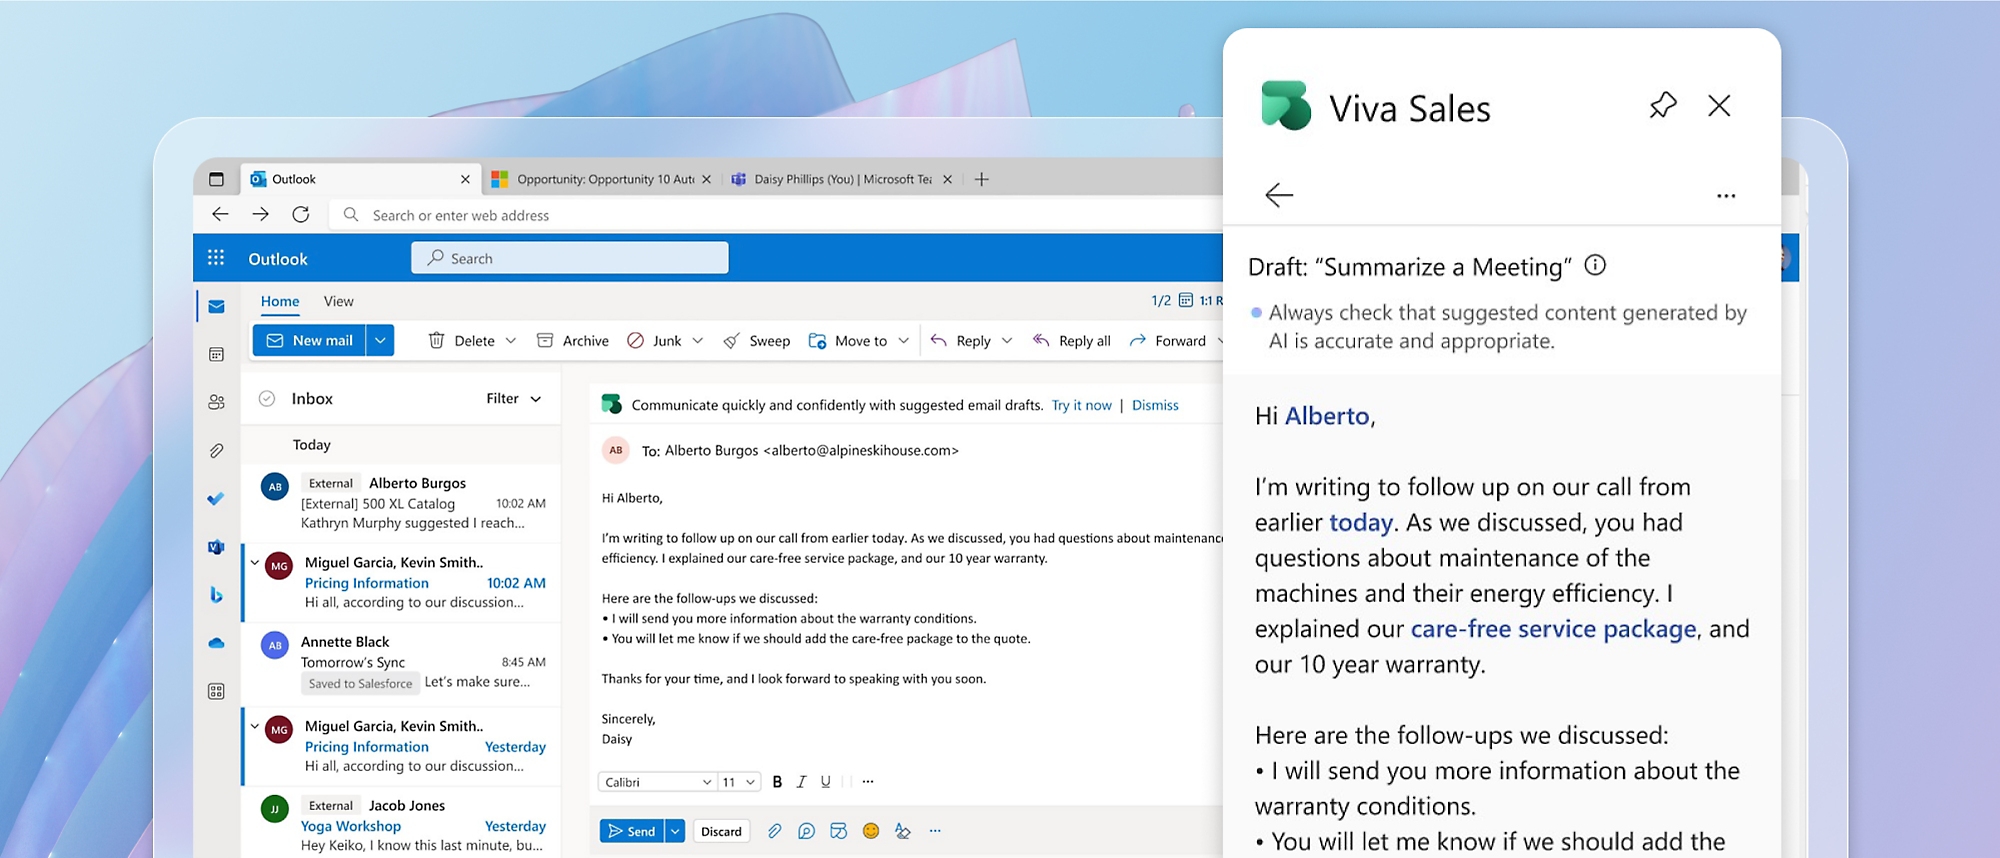 Το Microsoft Outlook είναι ανοιχτό και ένα παράθυρο για πωλήσεις viva είναι ανοιχτό